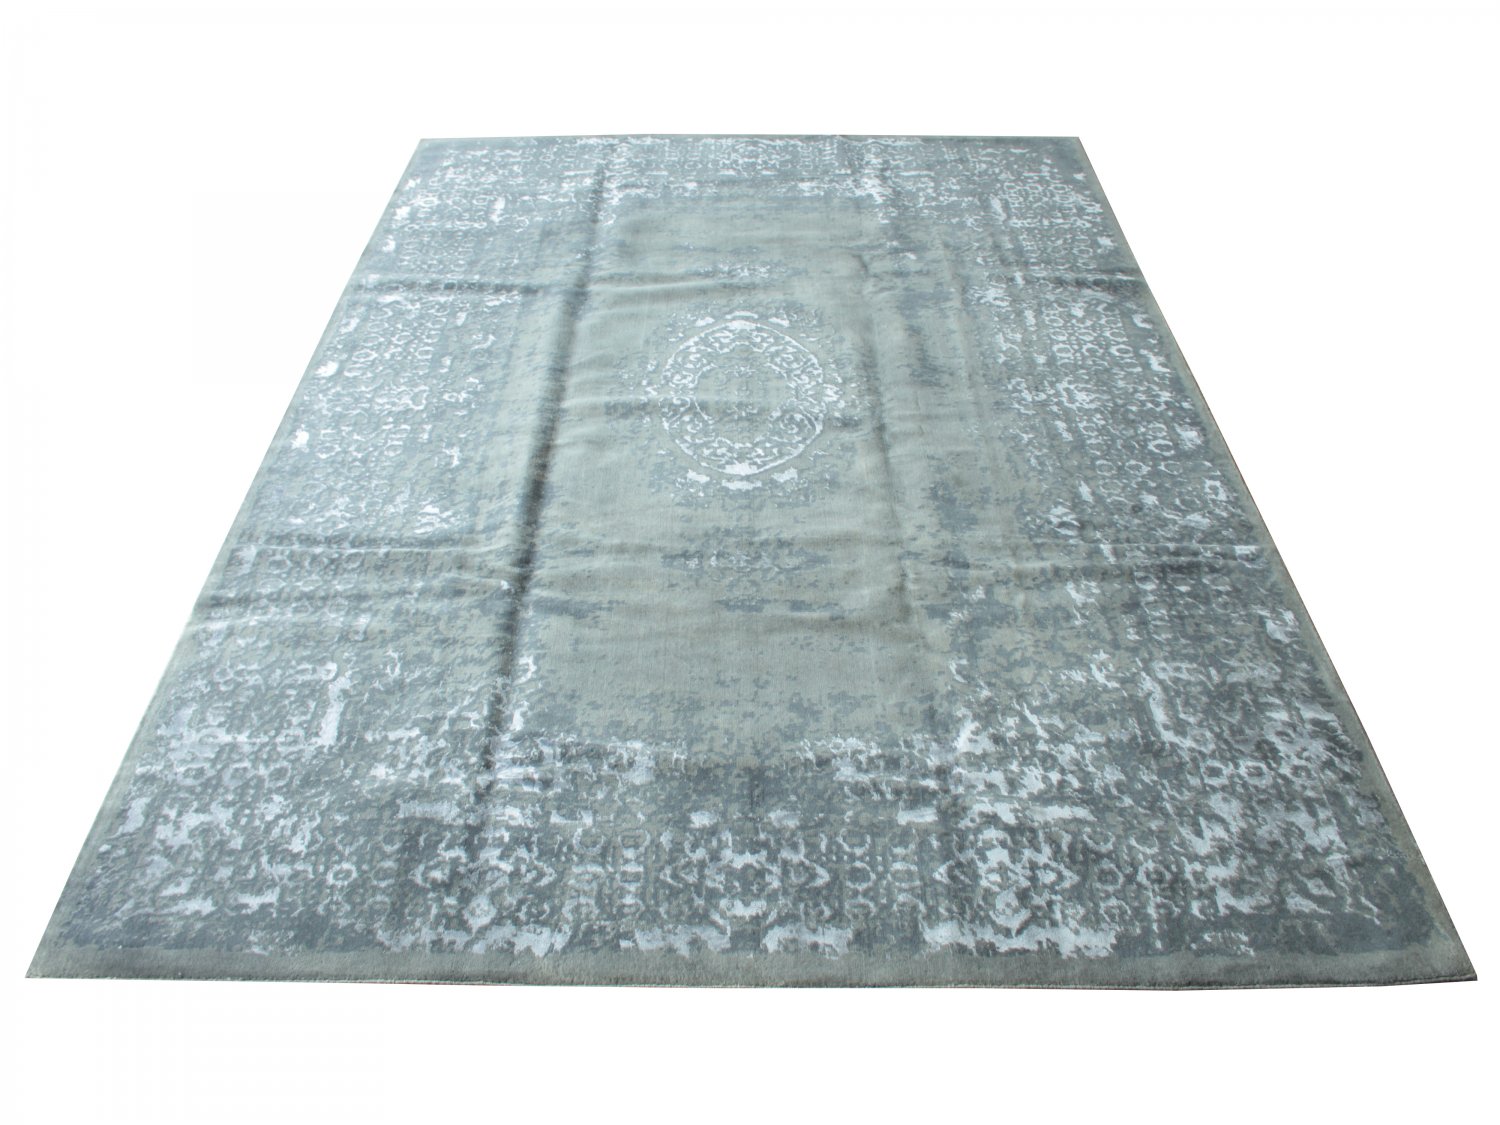 فرش پشمی ماشینی طبیعی و ارگانیک کد 0090 - زمینه طوسی کم رنگ - حاشیه طوسی کم رنگ